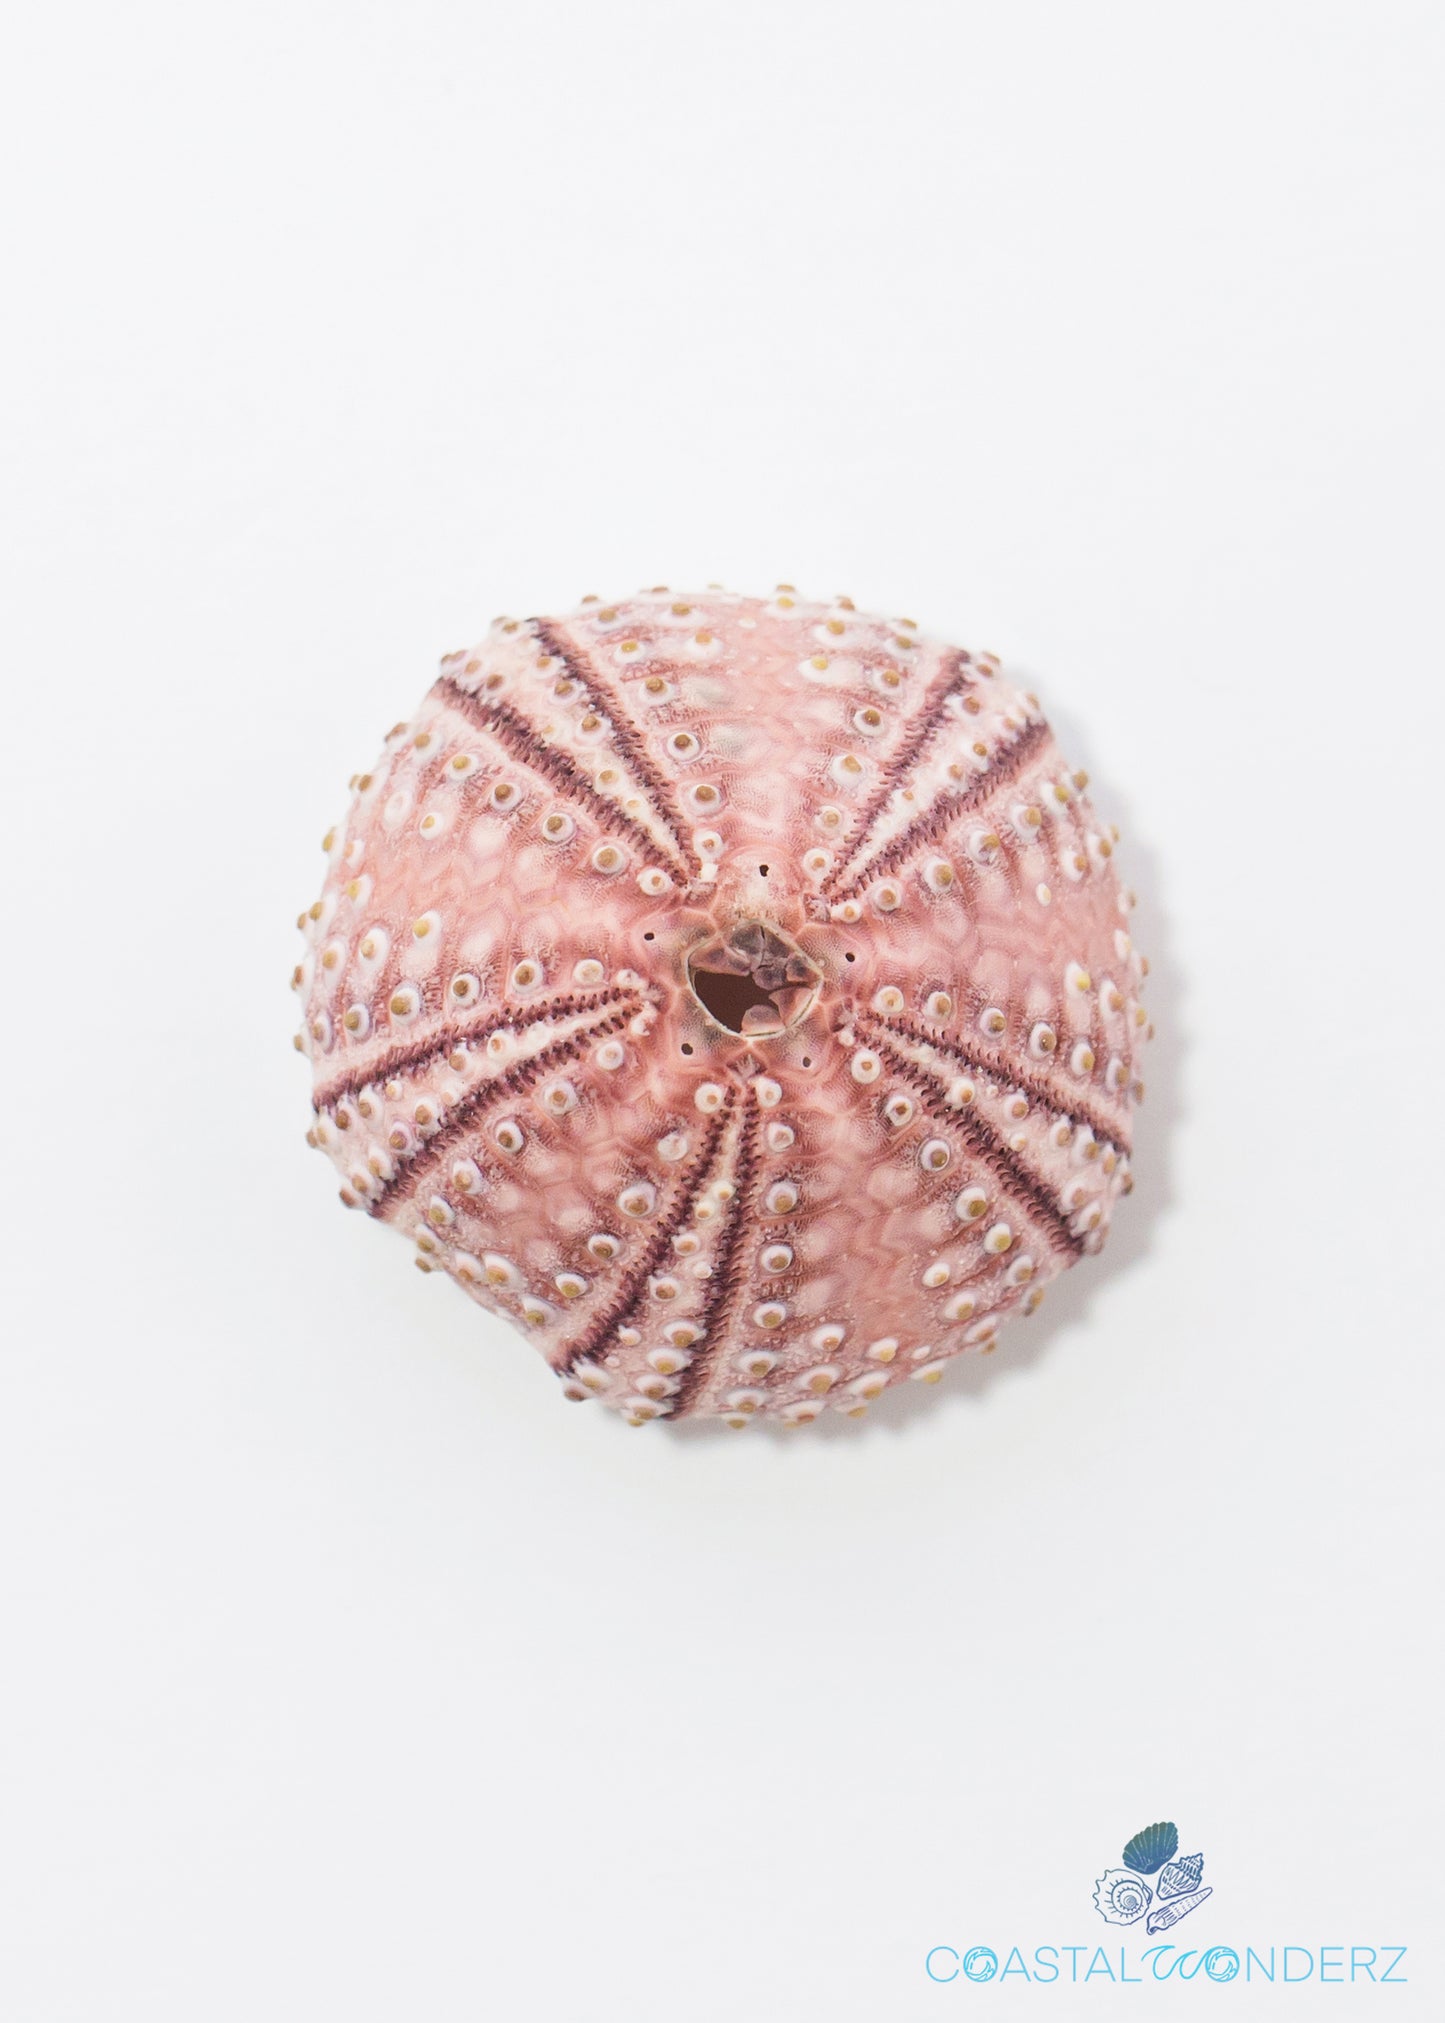 Florida Sea Urchin